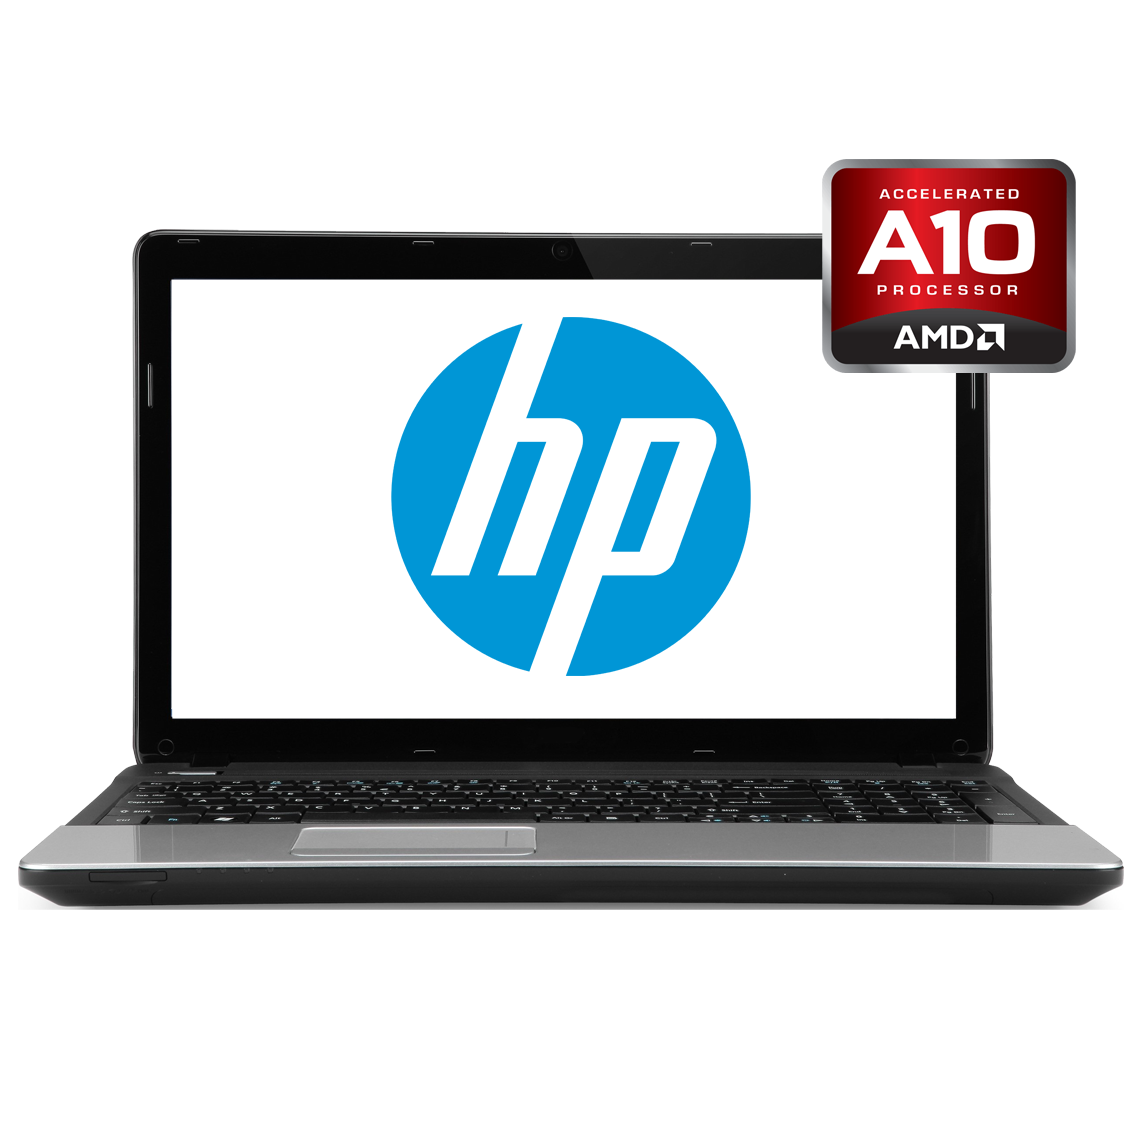 HP - 17.3 inch AMD A10